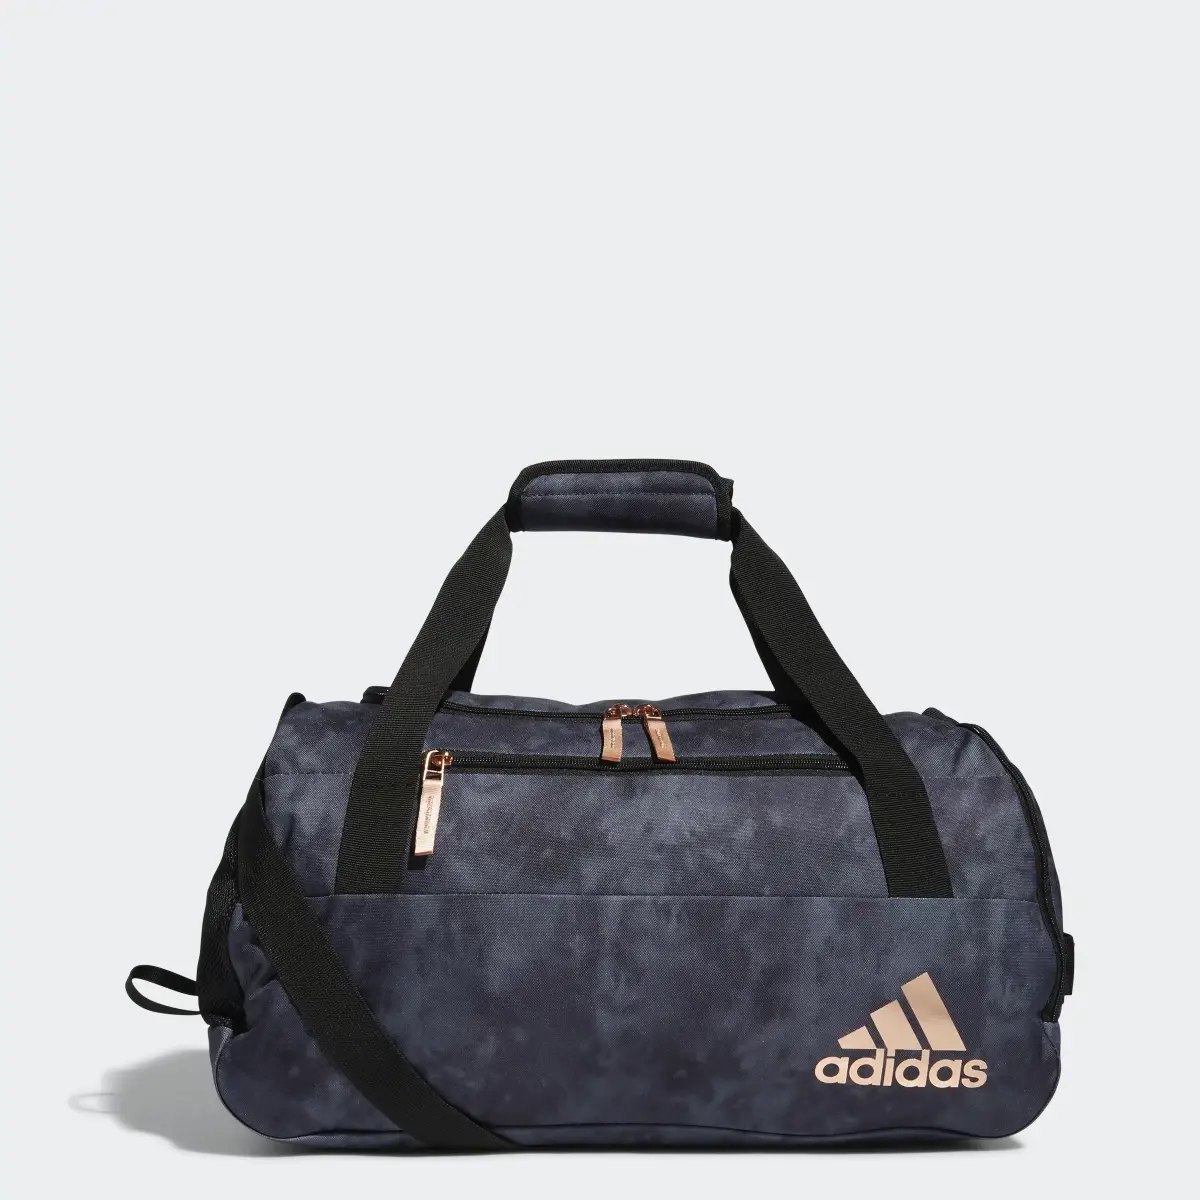 Adidas Squad Duffel Bag. 1